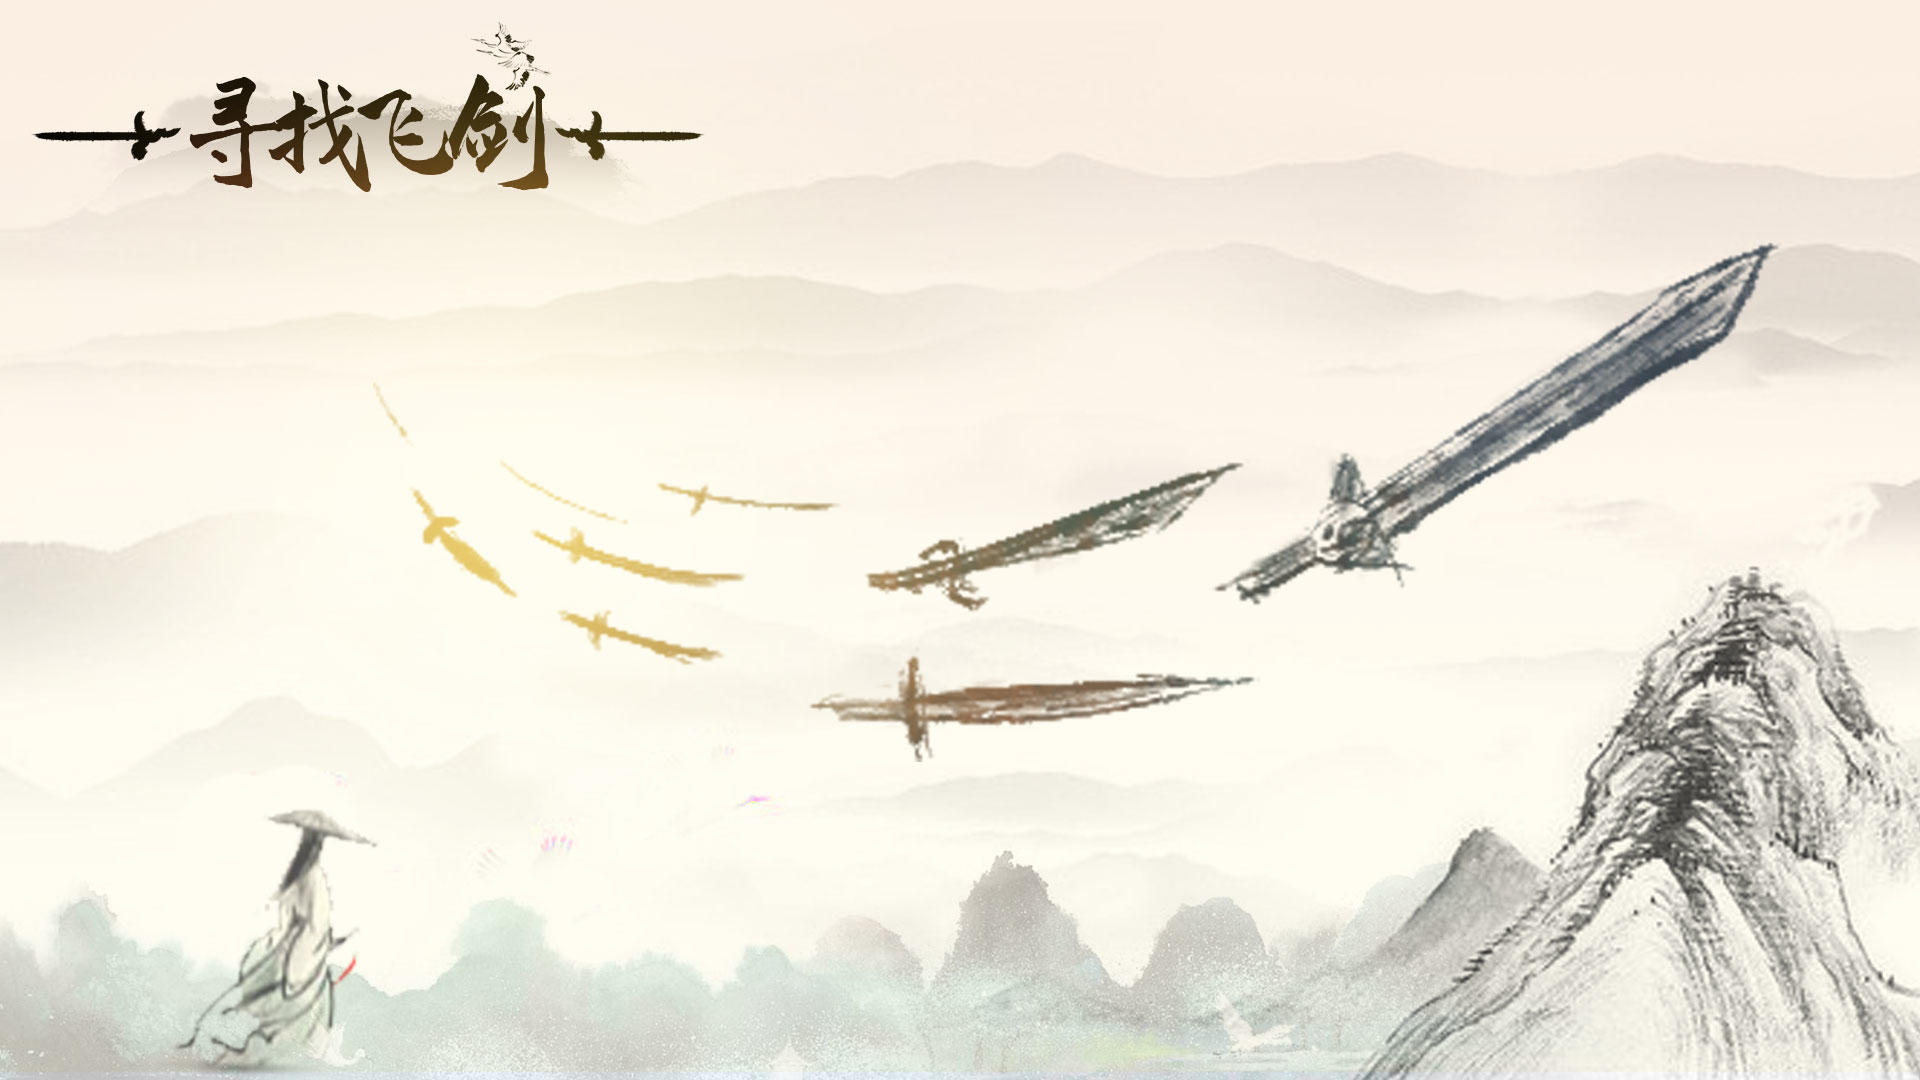 Banner of उड़ने वाली तलवार की तलाश 1.0